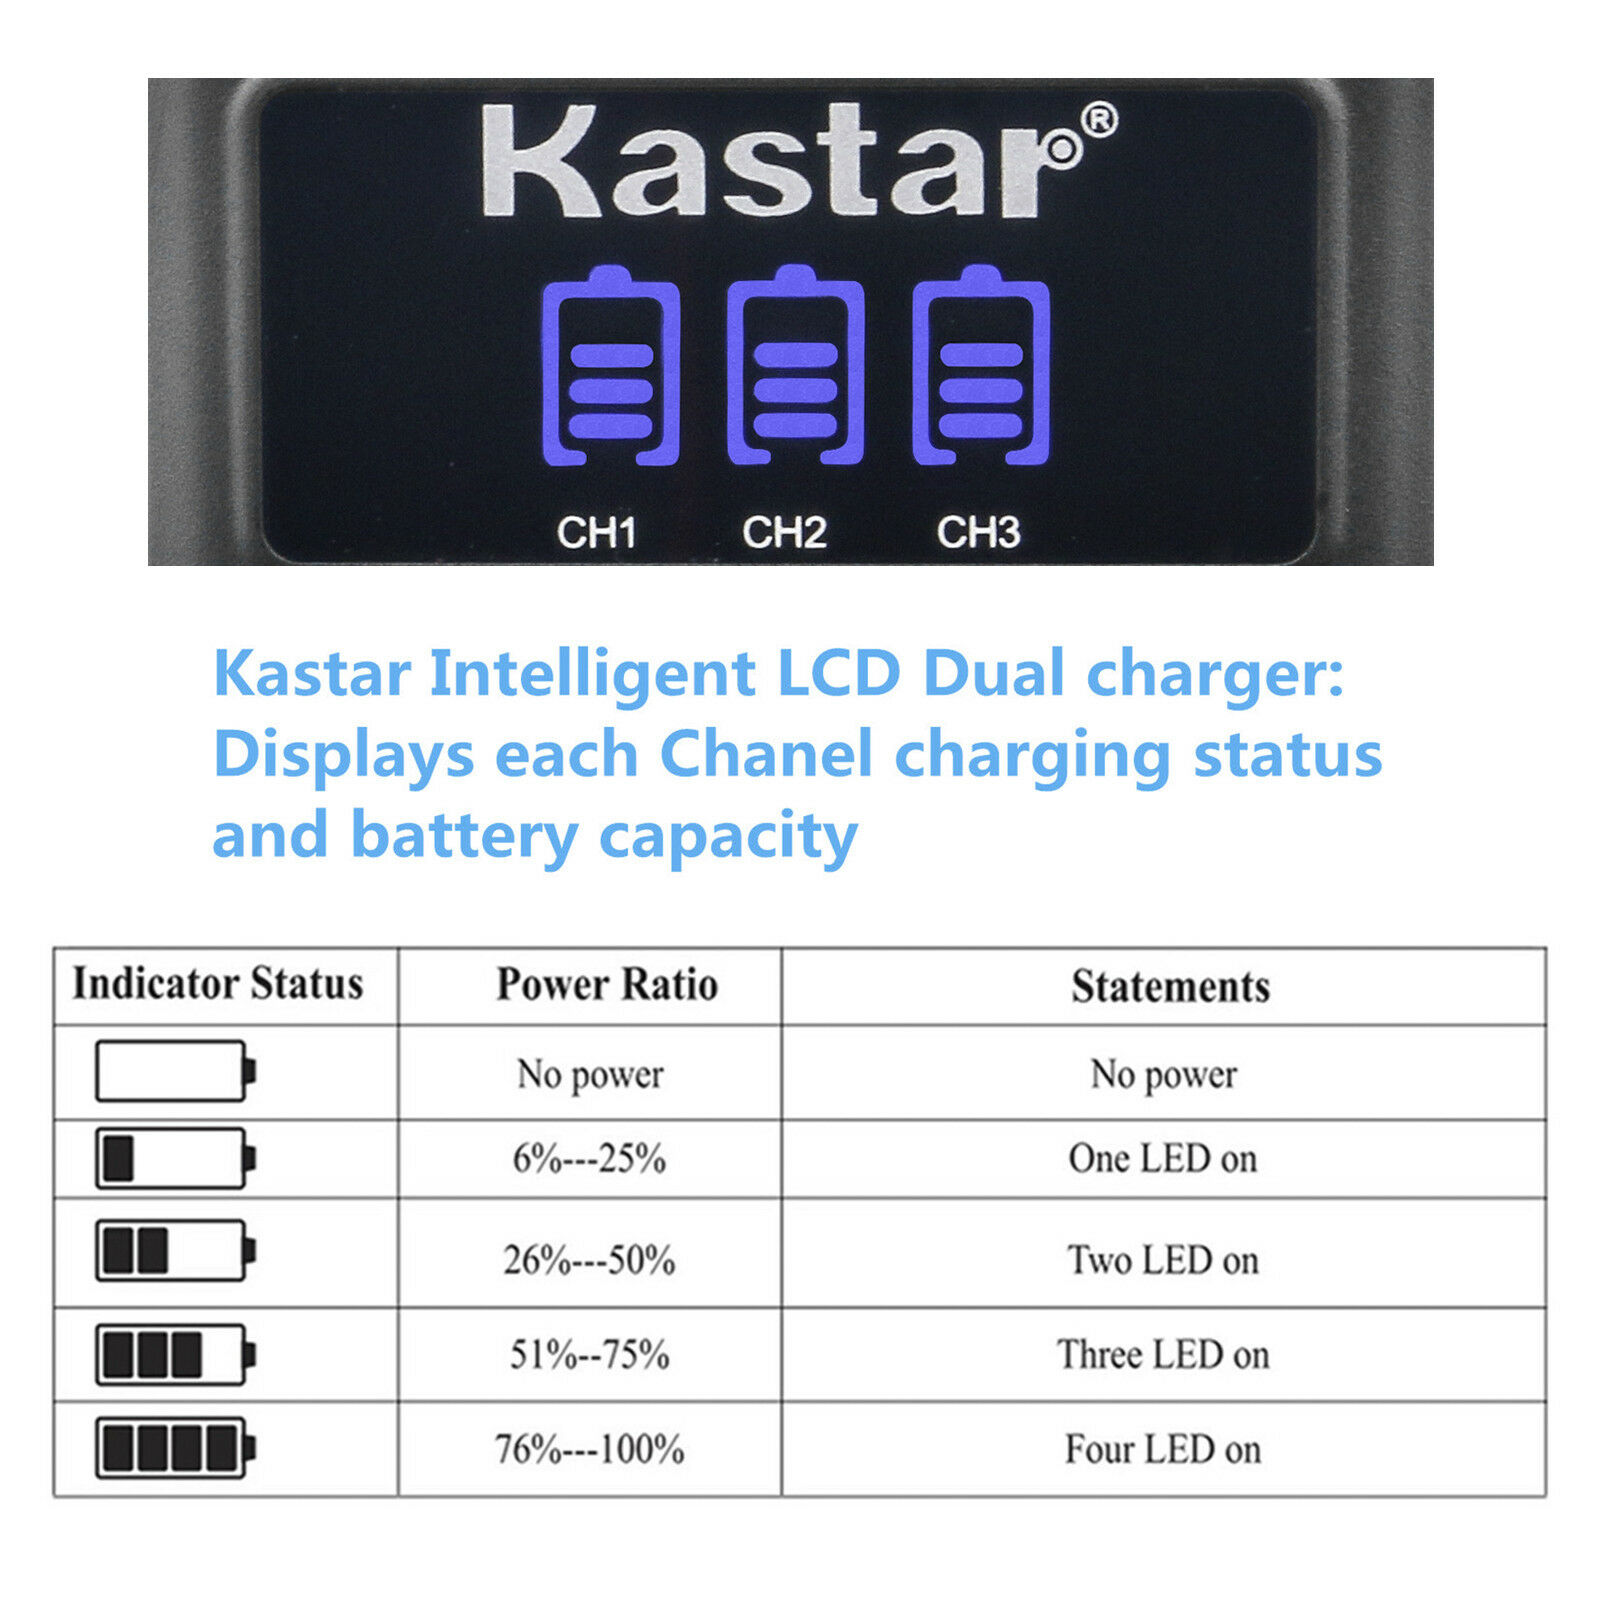 Kastar LCD Triple USB Battery Charger Compatible with Olympus Stylus 1030SW, Stylus 9000, Stylus 9010, SZ-10, SZ-11, SZ-12, SZ-14, SZ-15, SZ-16, SZ-20, SZ-25MR, SZ-30MR, SZ-31MR his - image 2 of 5